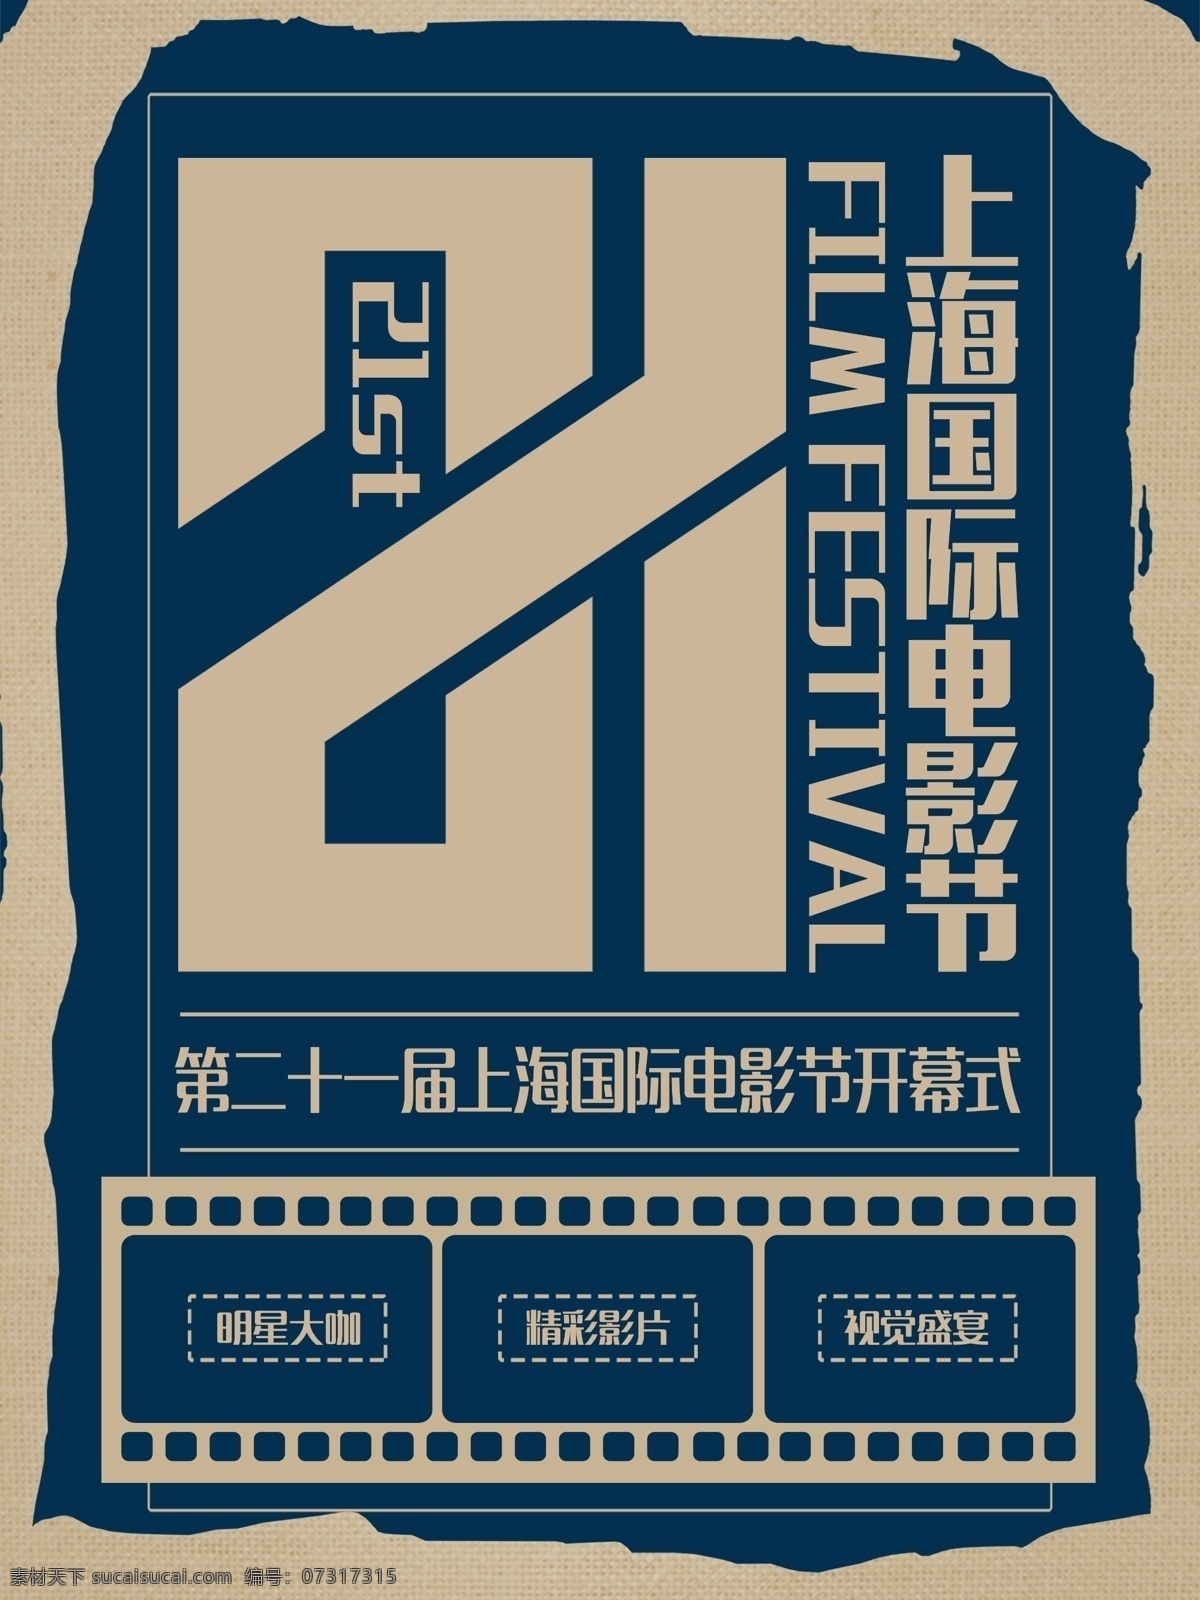 简约 复古 上海 国际电影节 宣传海报 电影节 节日海报 创意海报 电影节海报